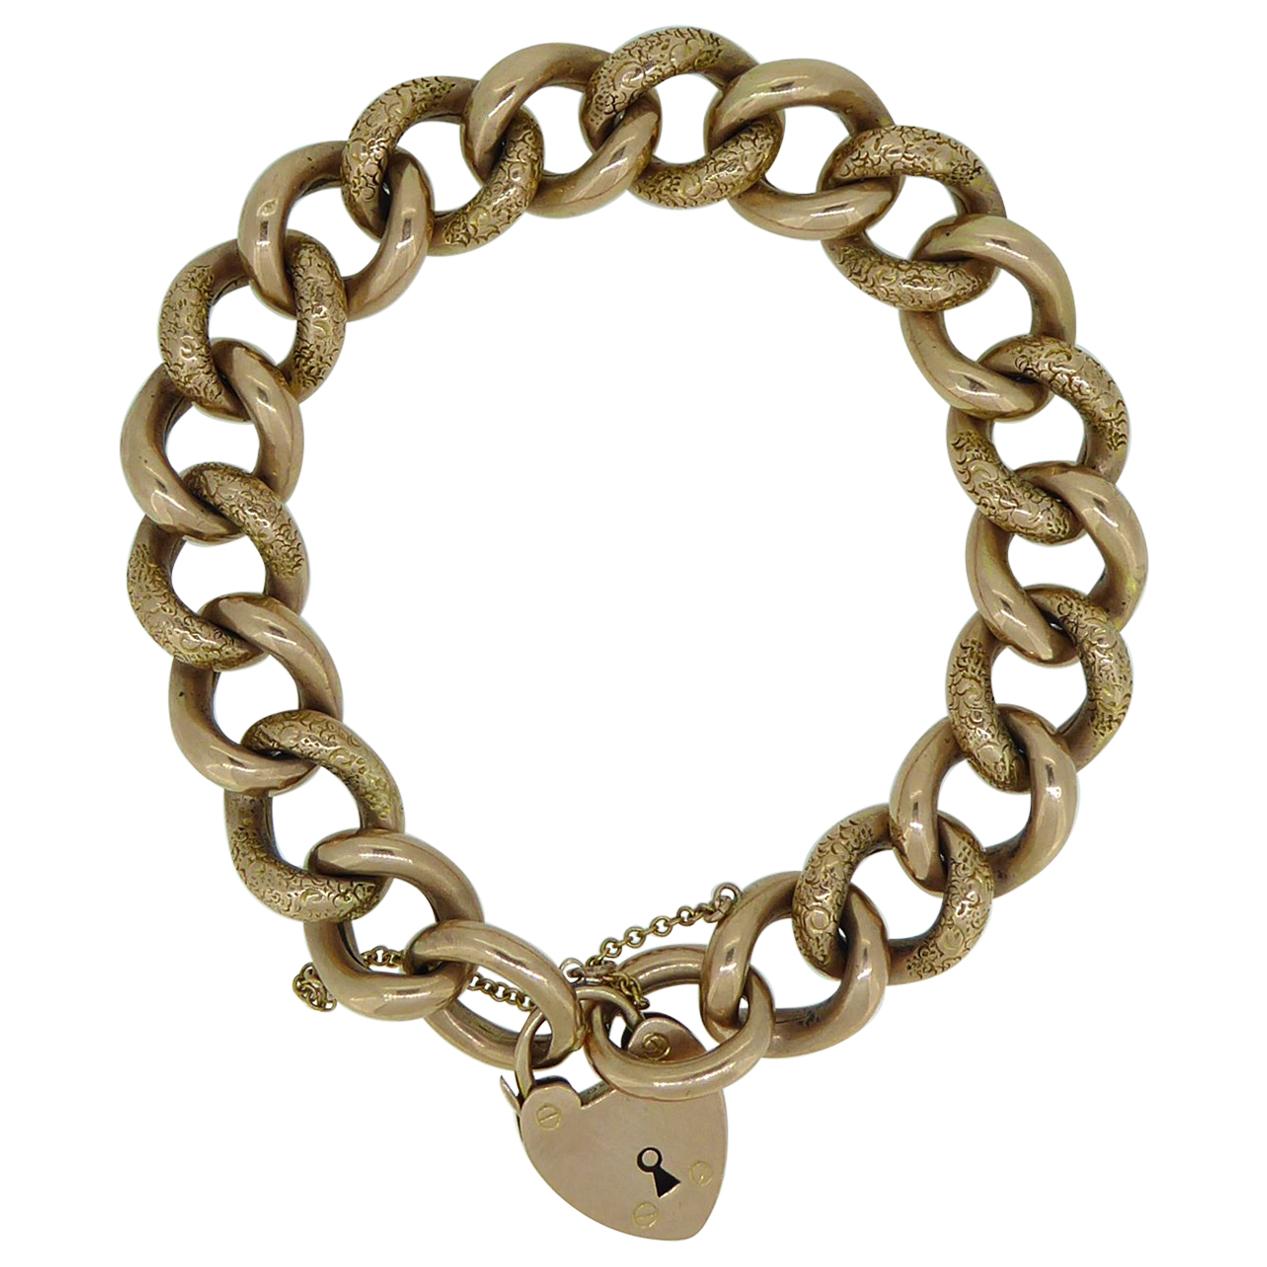 Edwardian Engraved Curb Bracelet, Heavy Gauge Rose Gold Links, Padlock Fastener